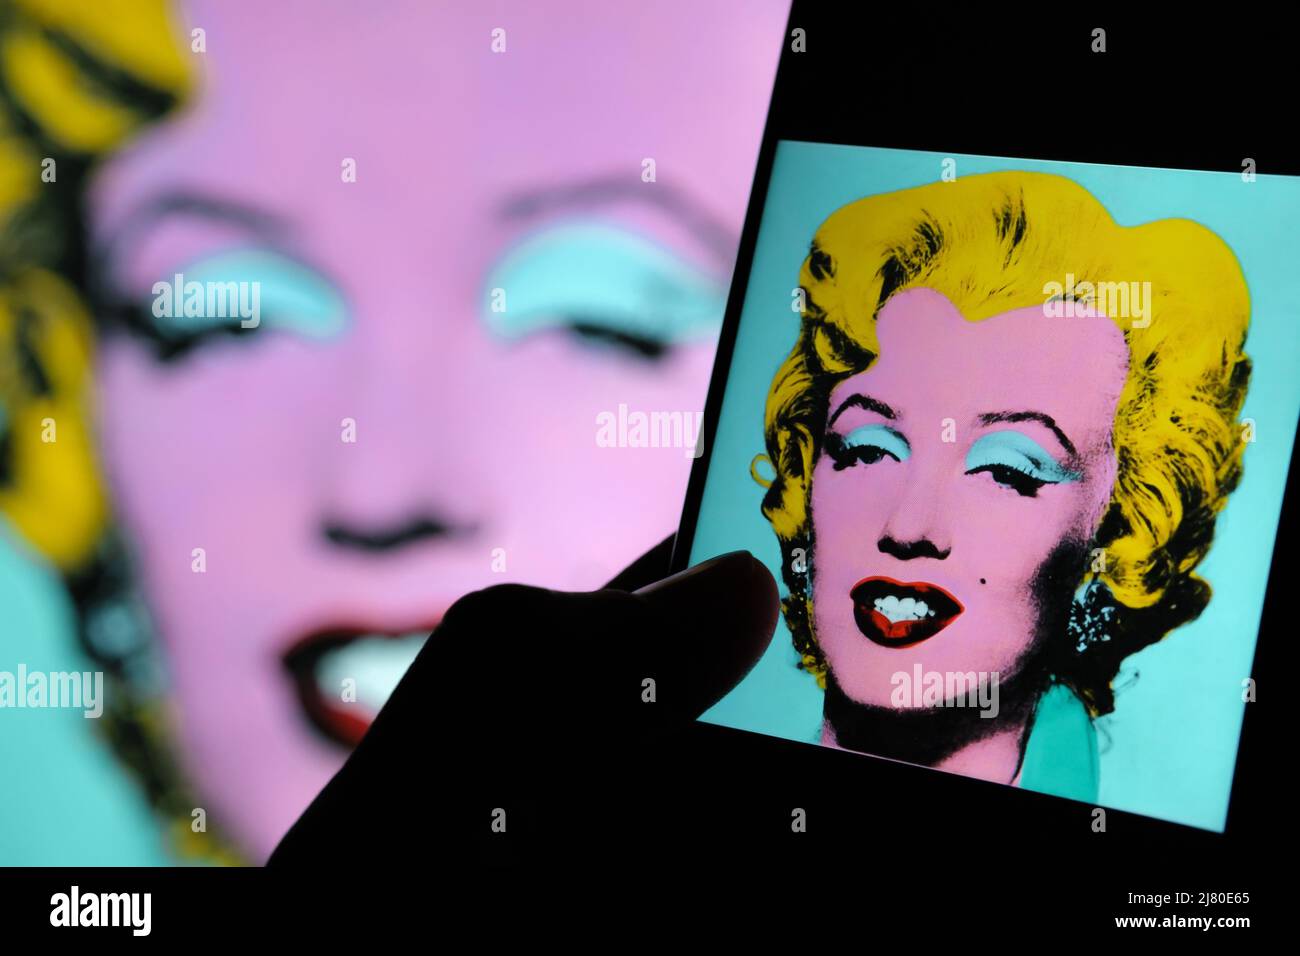 Tourné Sage Blue Marilyn sur un écran d'ipad entouré de billets de banque en dollars. Un portrait de Marilyn Monroe par Andy Warhol. Stafford, Royaume-Uni Banque D'Images